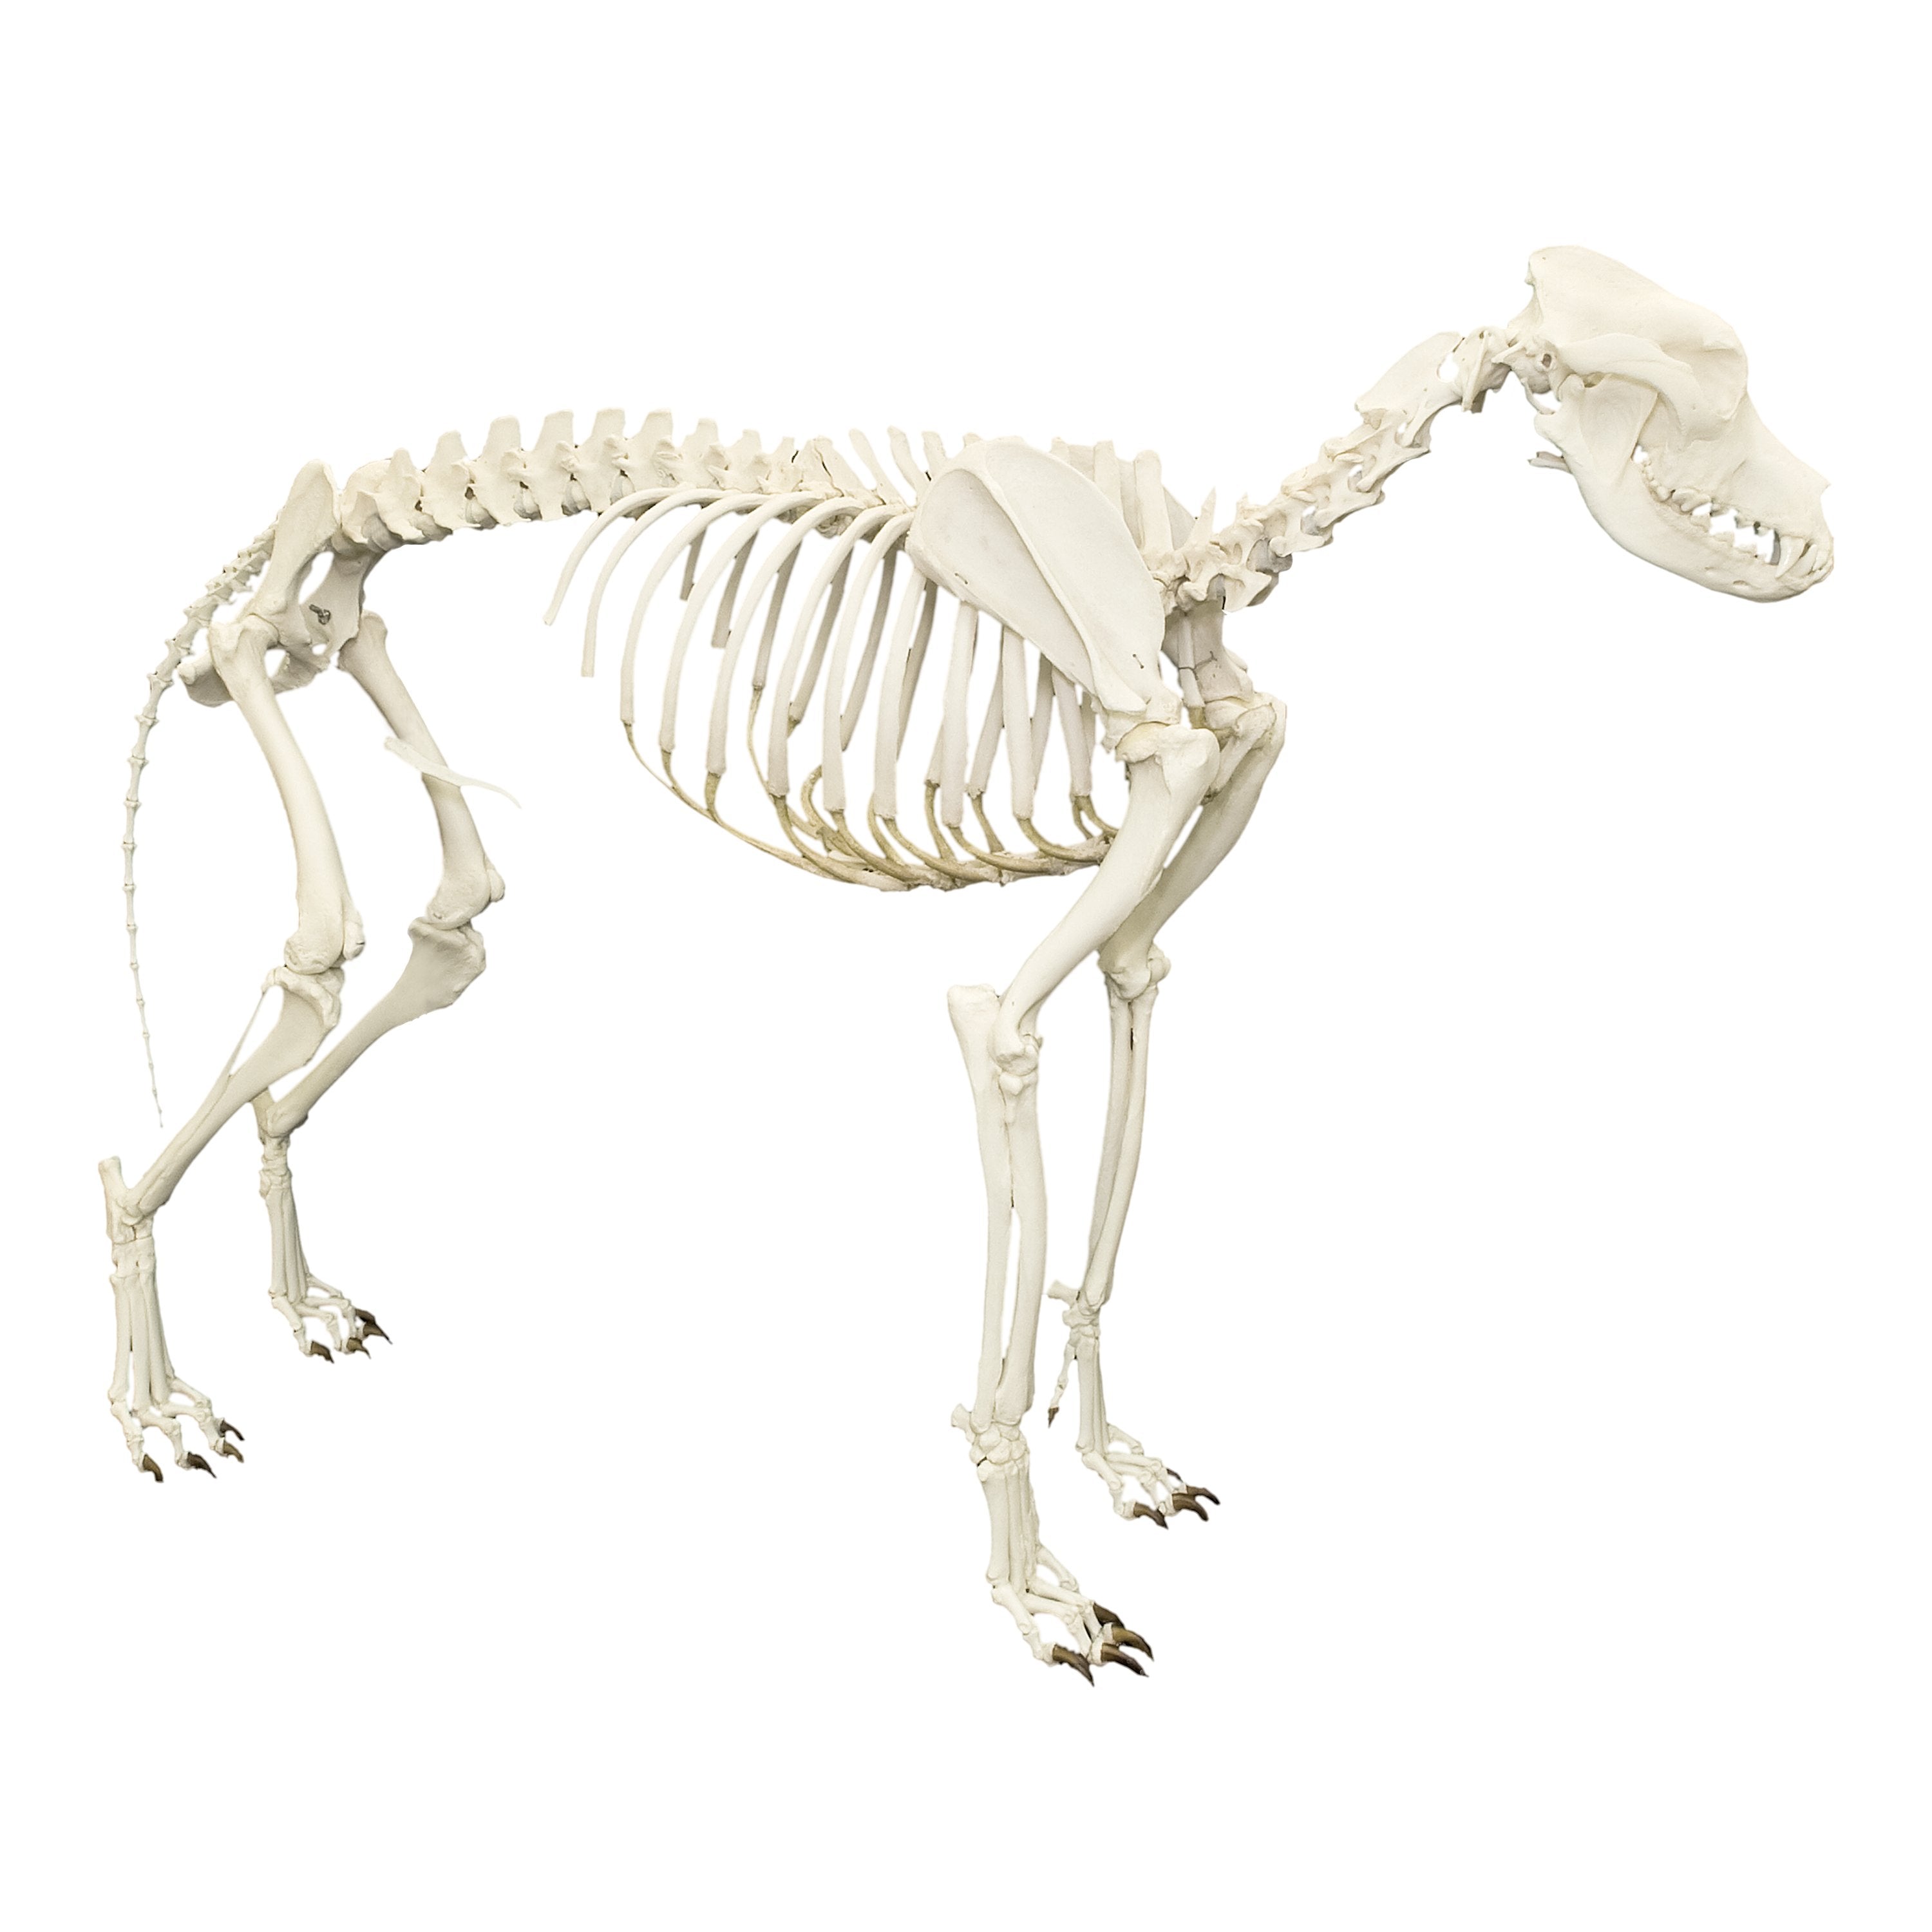 http://www.skullsunlimited.com/cdn/shop/products/Dog-Skeleton.jpg?v=1541711981